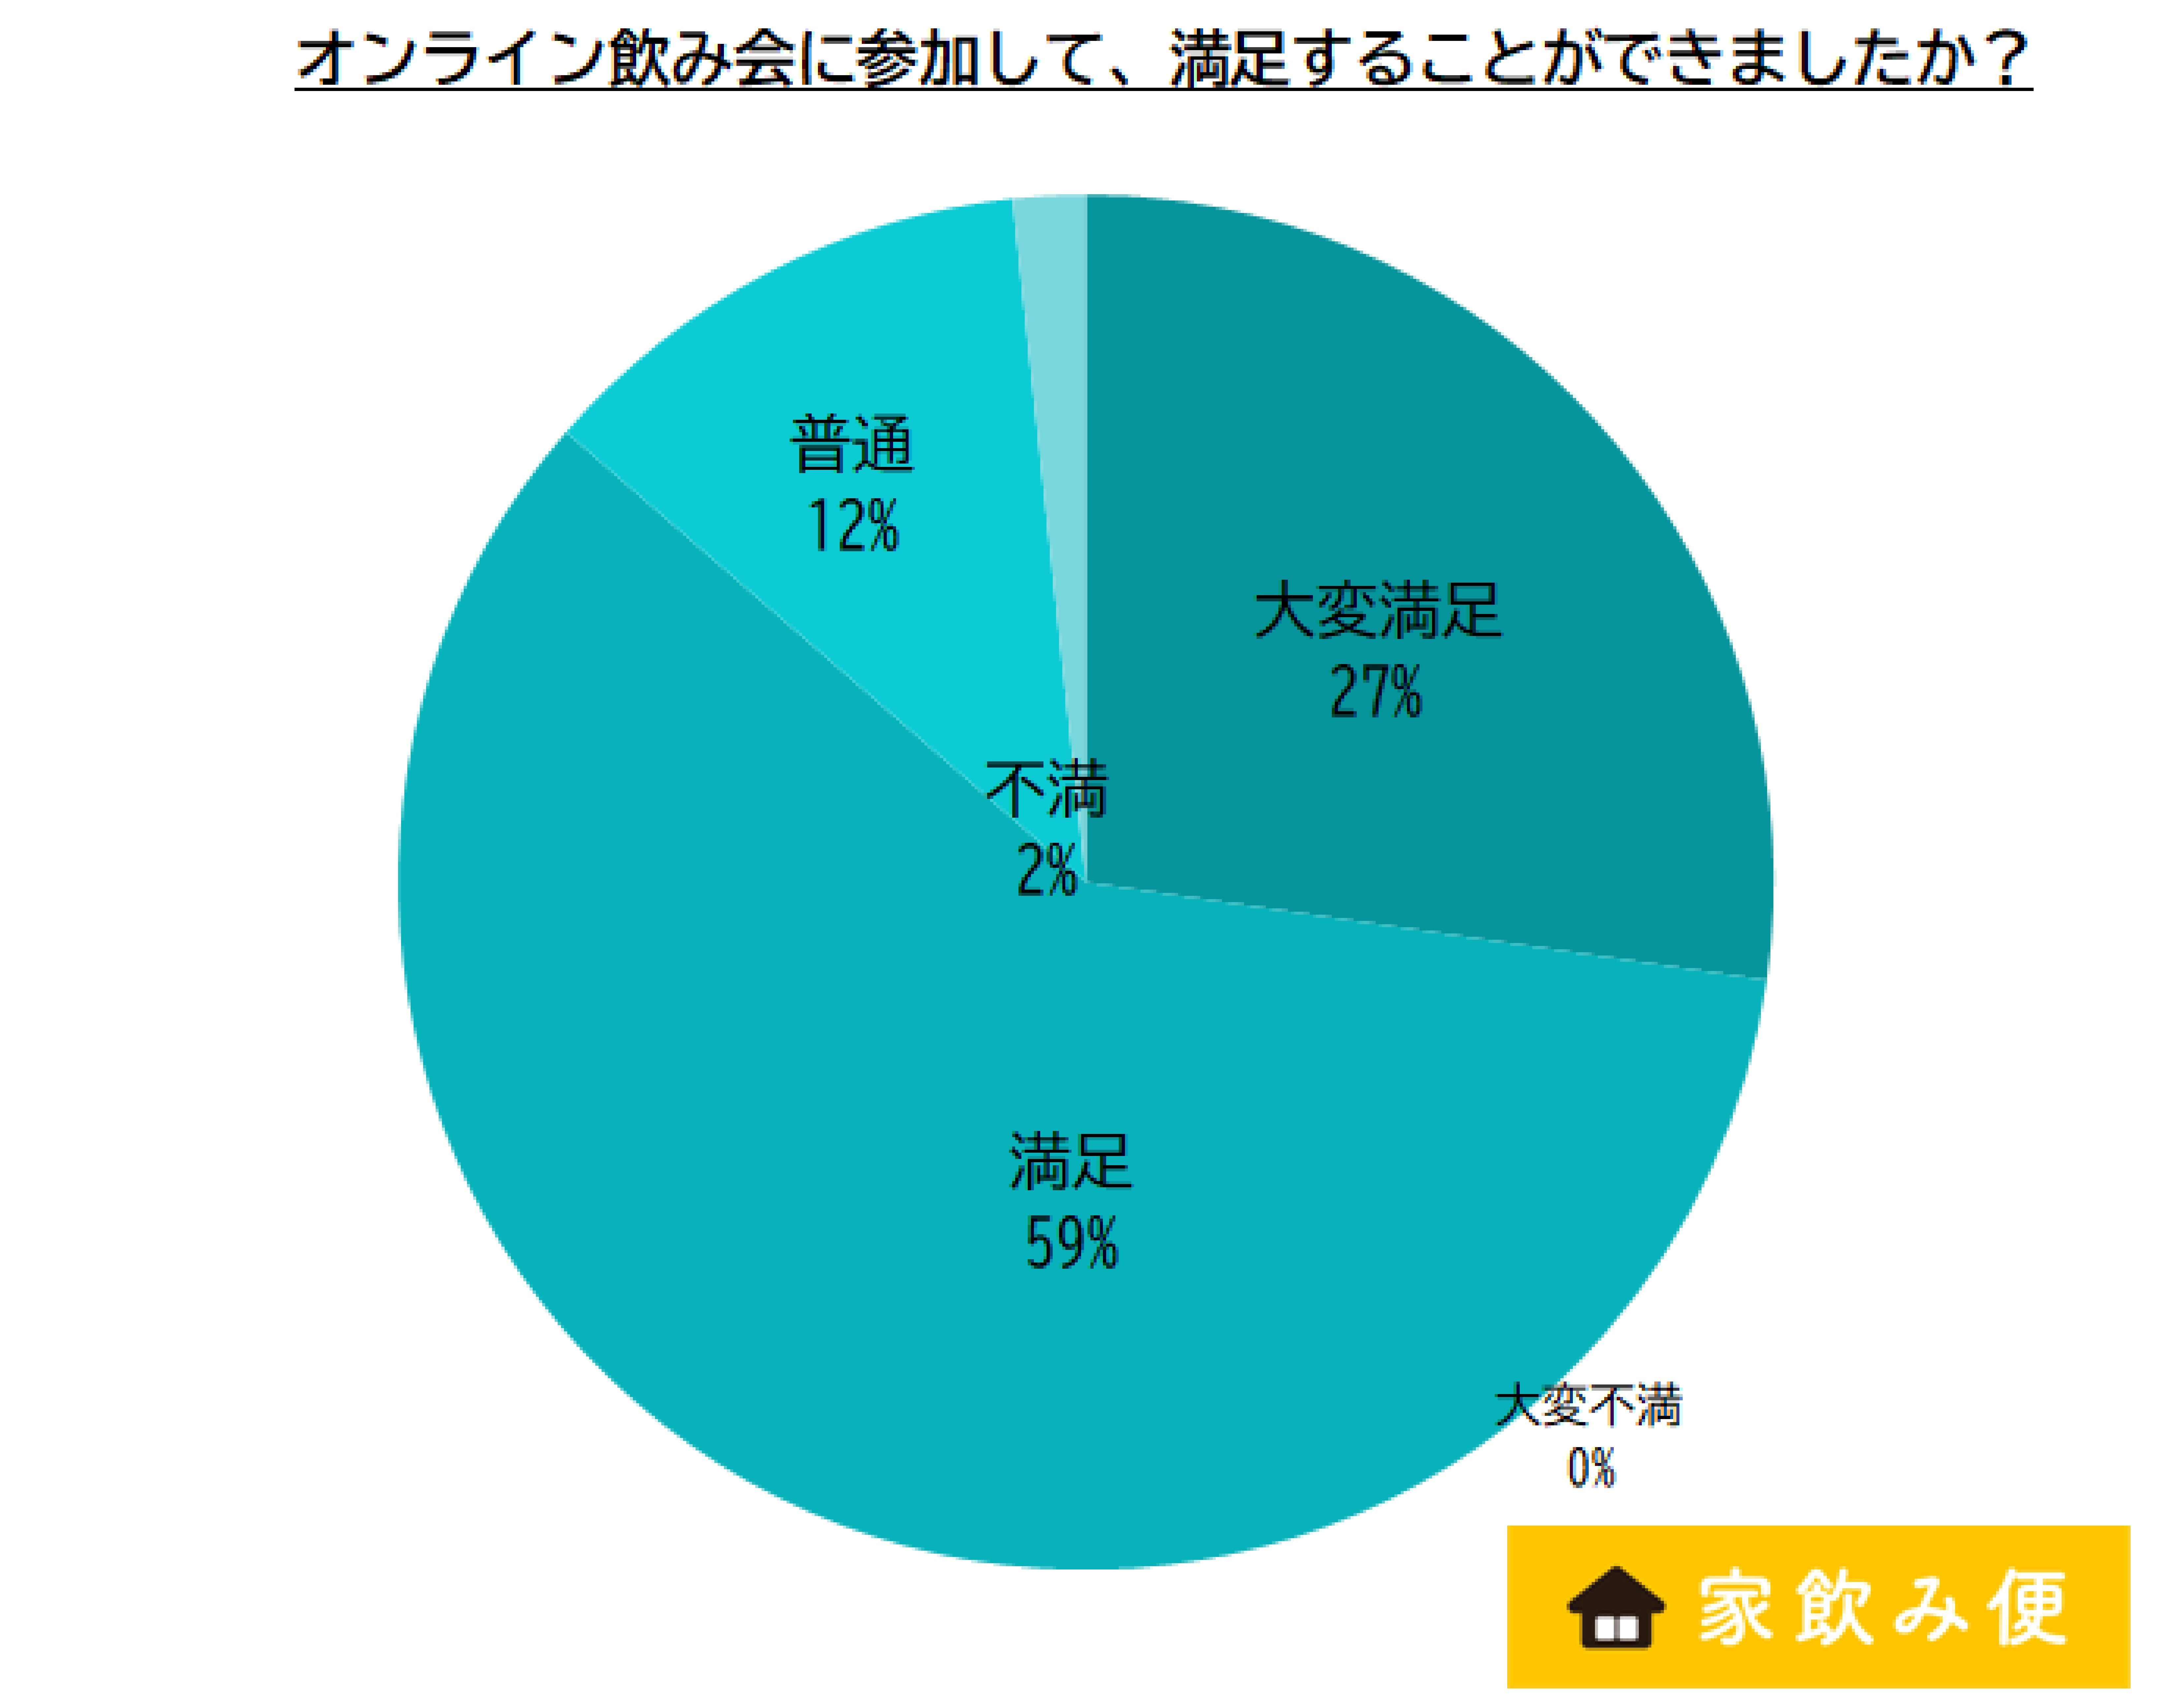  _181_http://www.apcompany.jp/news/2021/05/06/%E5%8F%82%E5%8A%A0%E3%81%AE%E6%84%9F%E6%83%B3.jpg